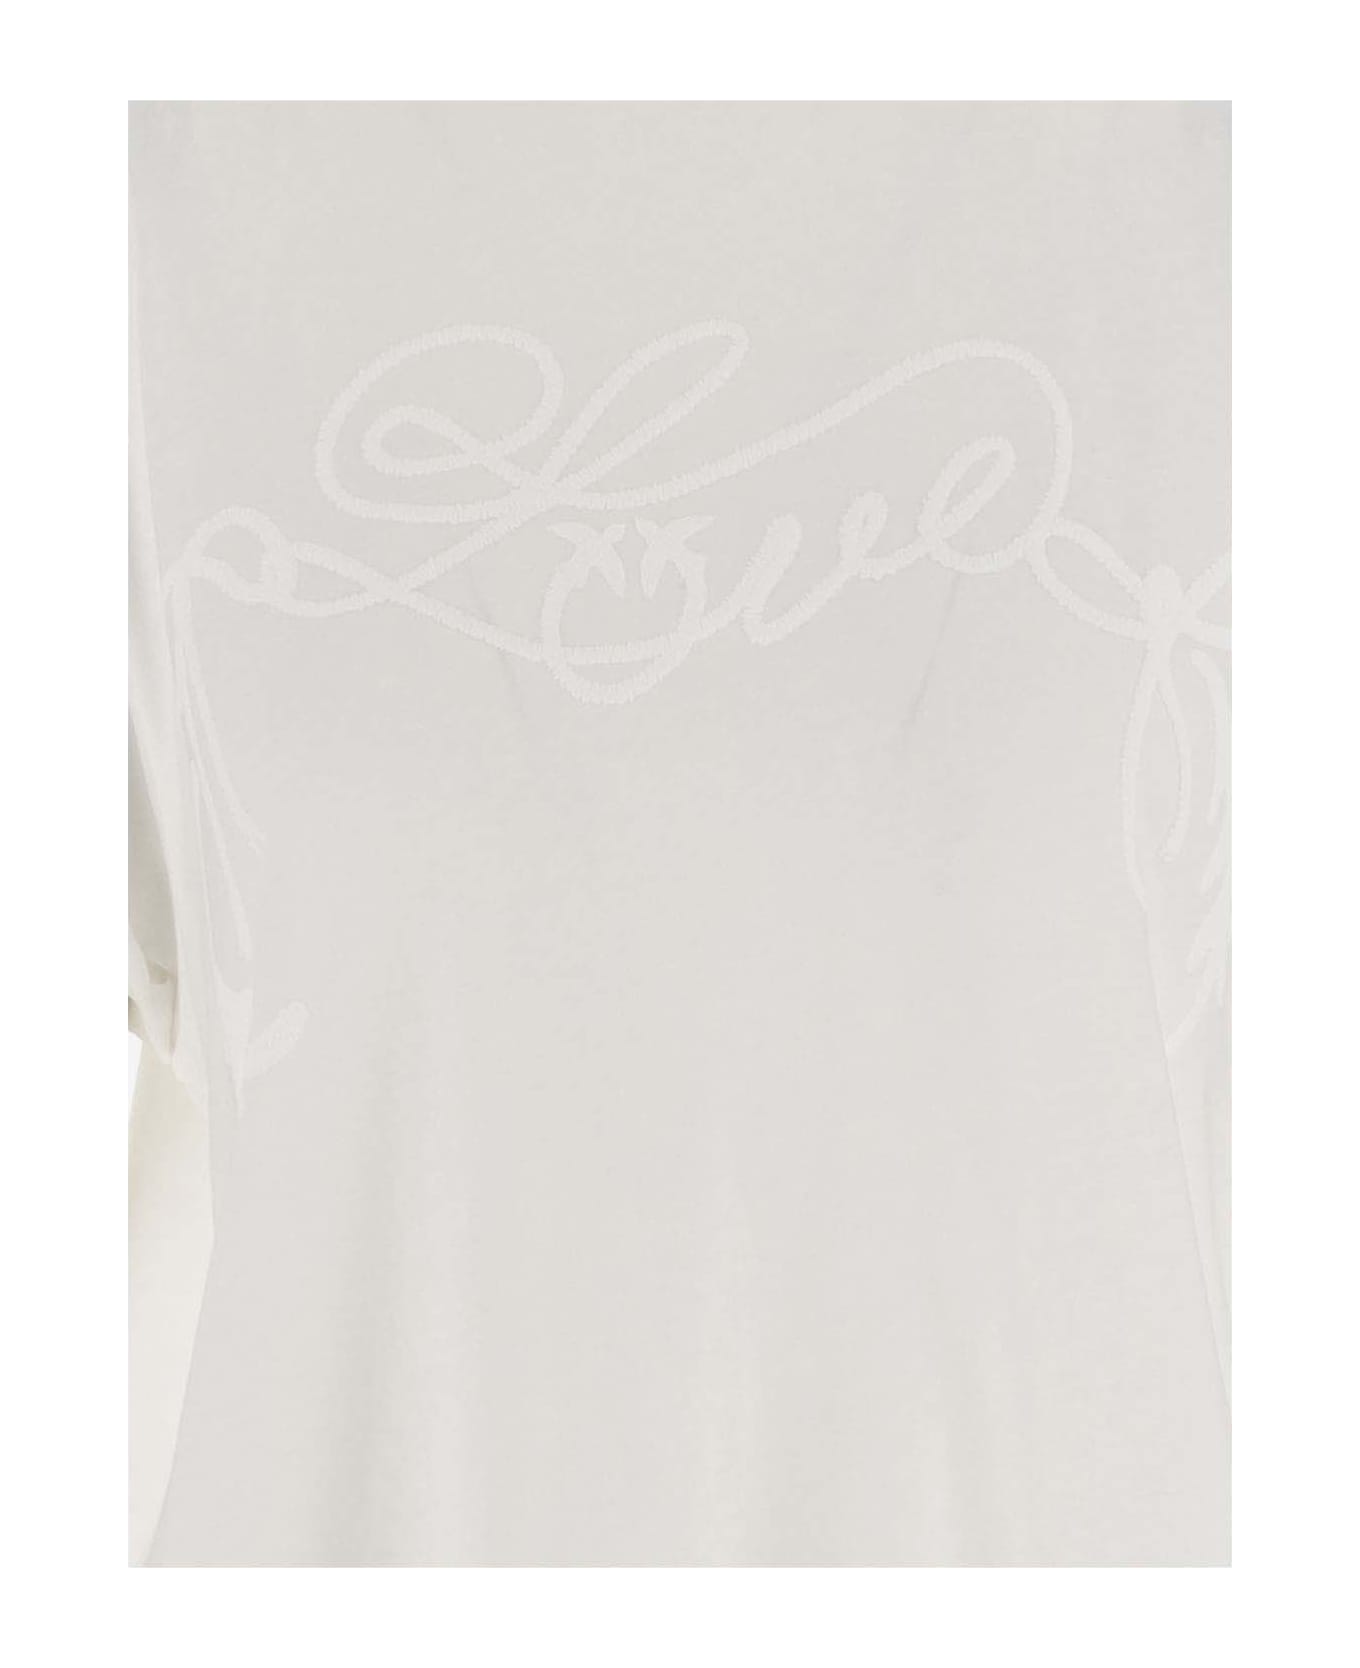 Pinko Love Print Cotton T-shirt - White Tシャツ